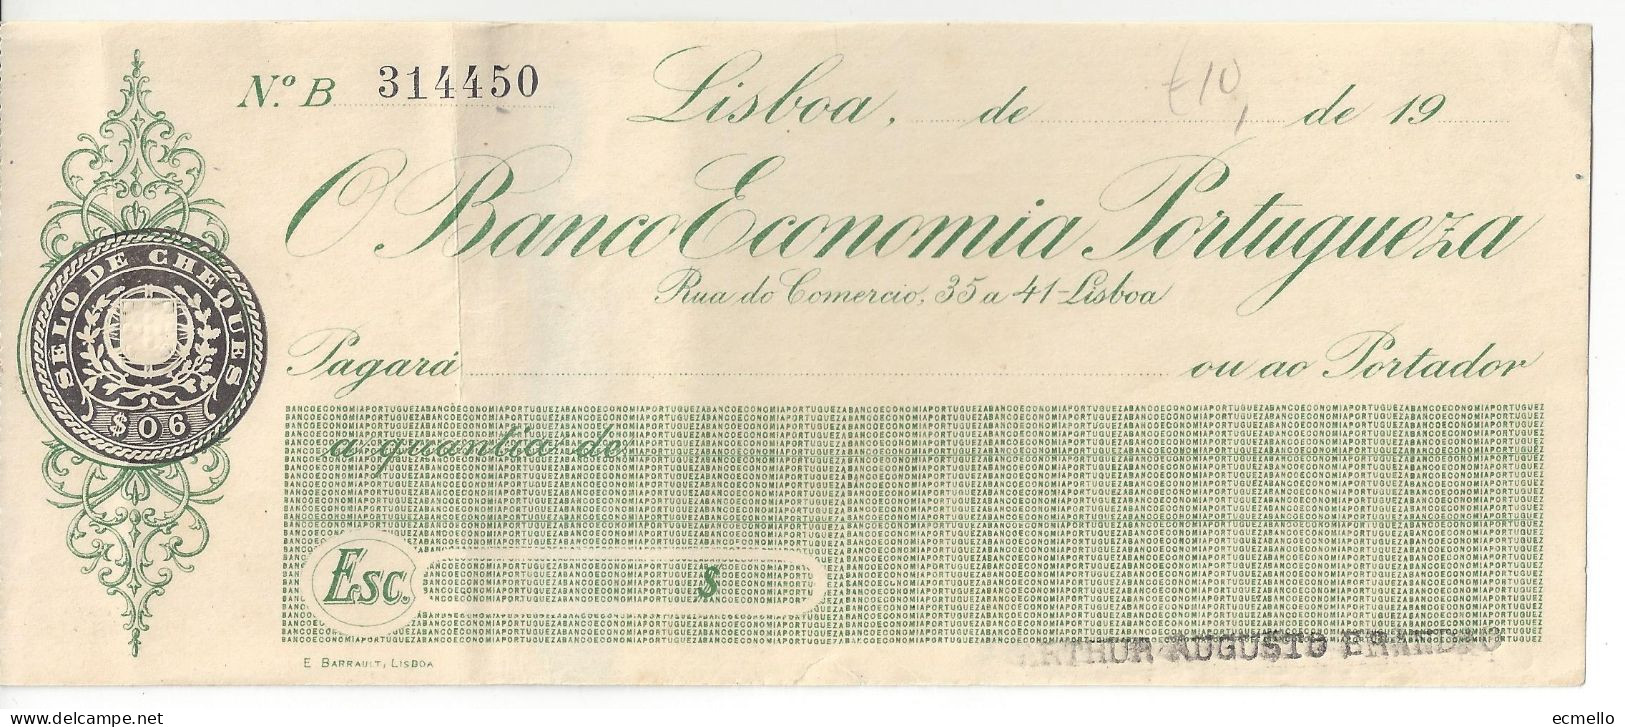 PORTUGAL CHEQUE CHECK BANCO ECONOMIA PORTUGUESA 1930'S SCARCE - Cheques & Traveler's Cheques